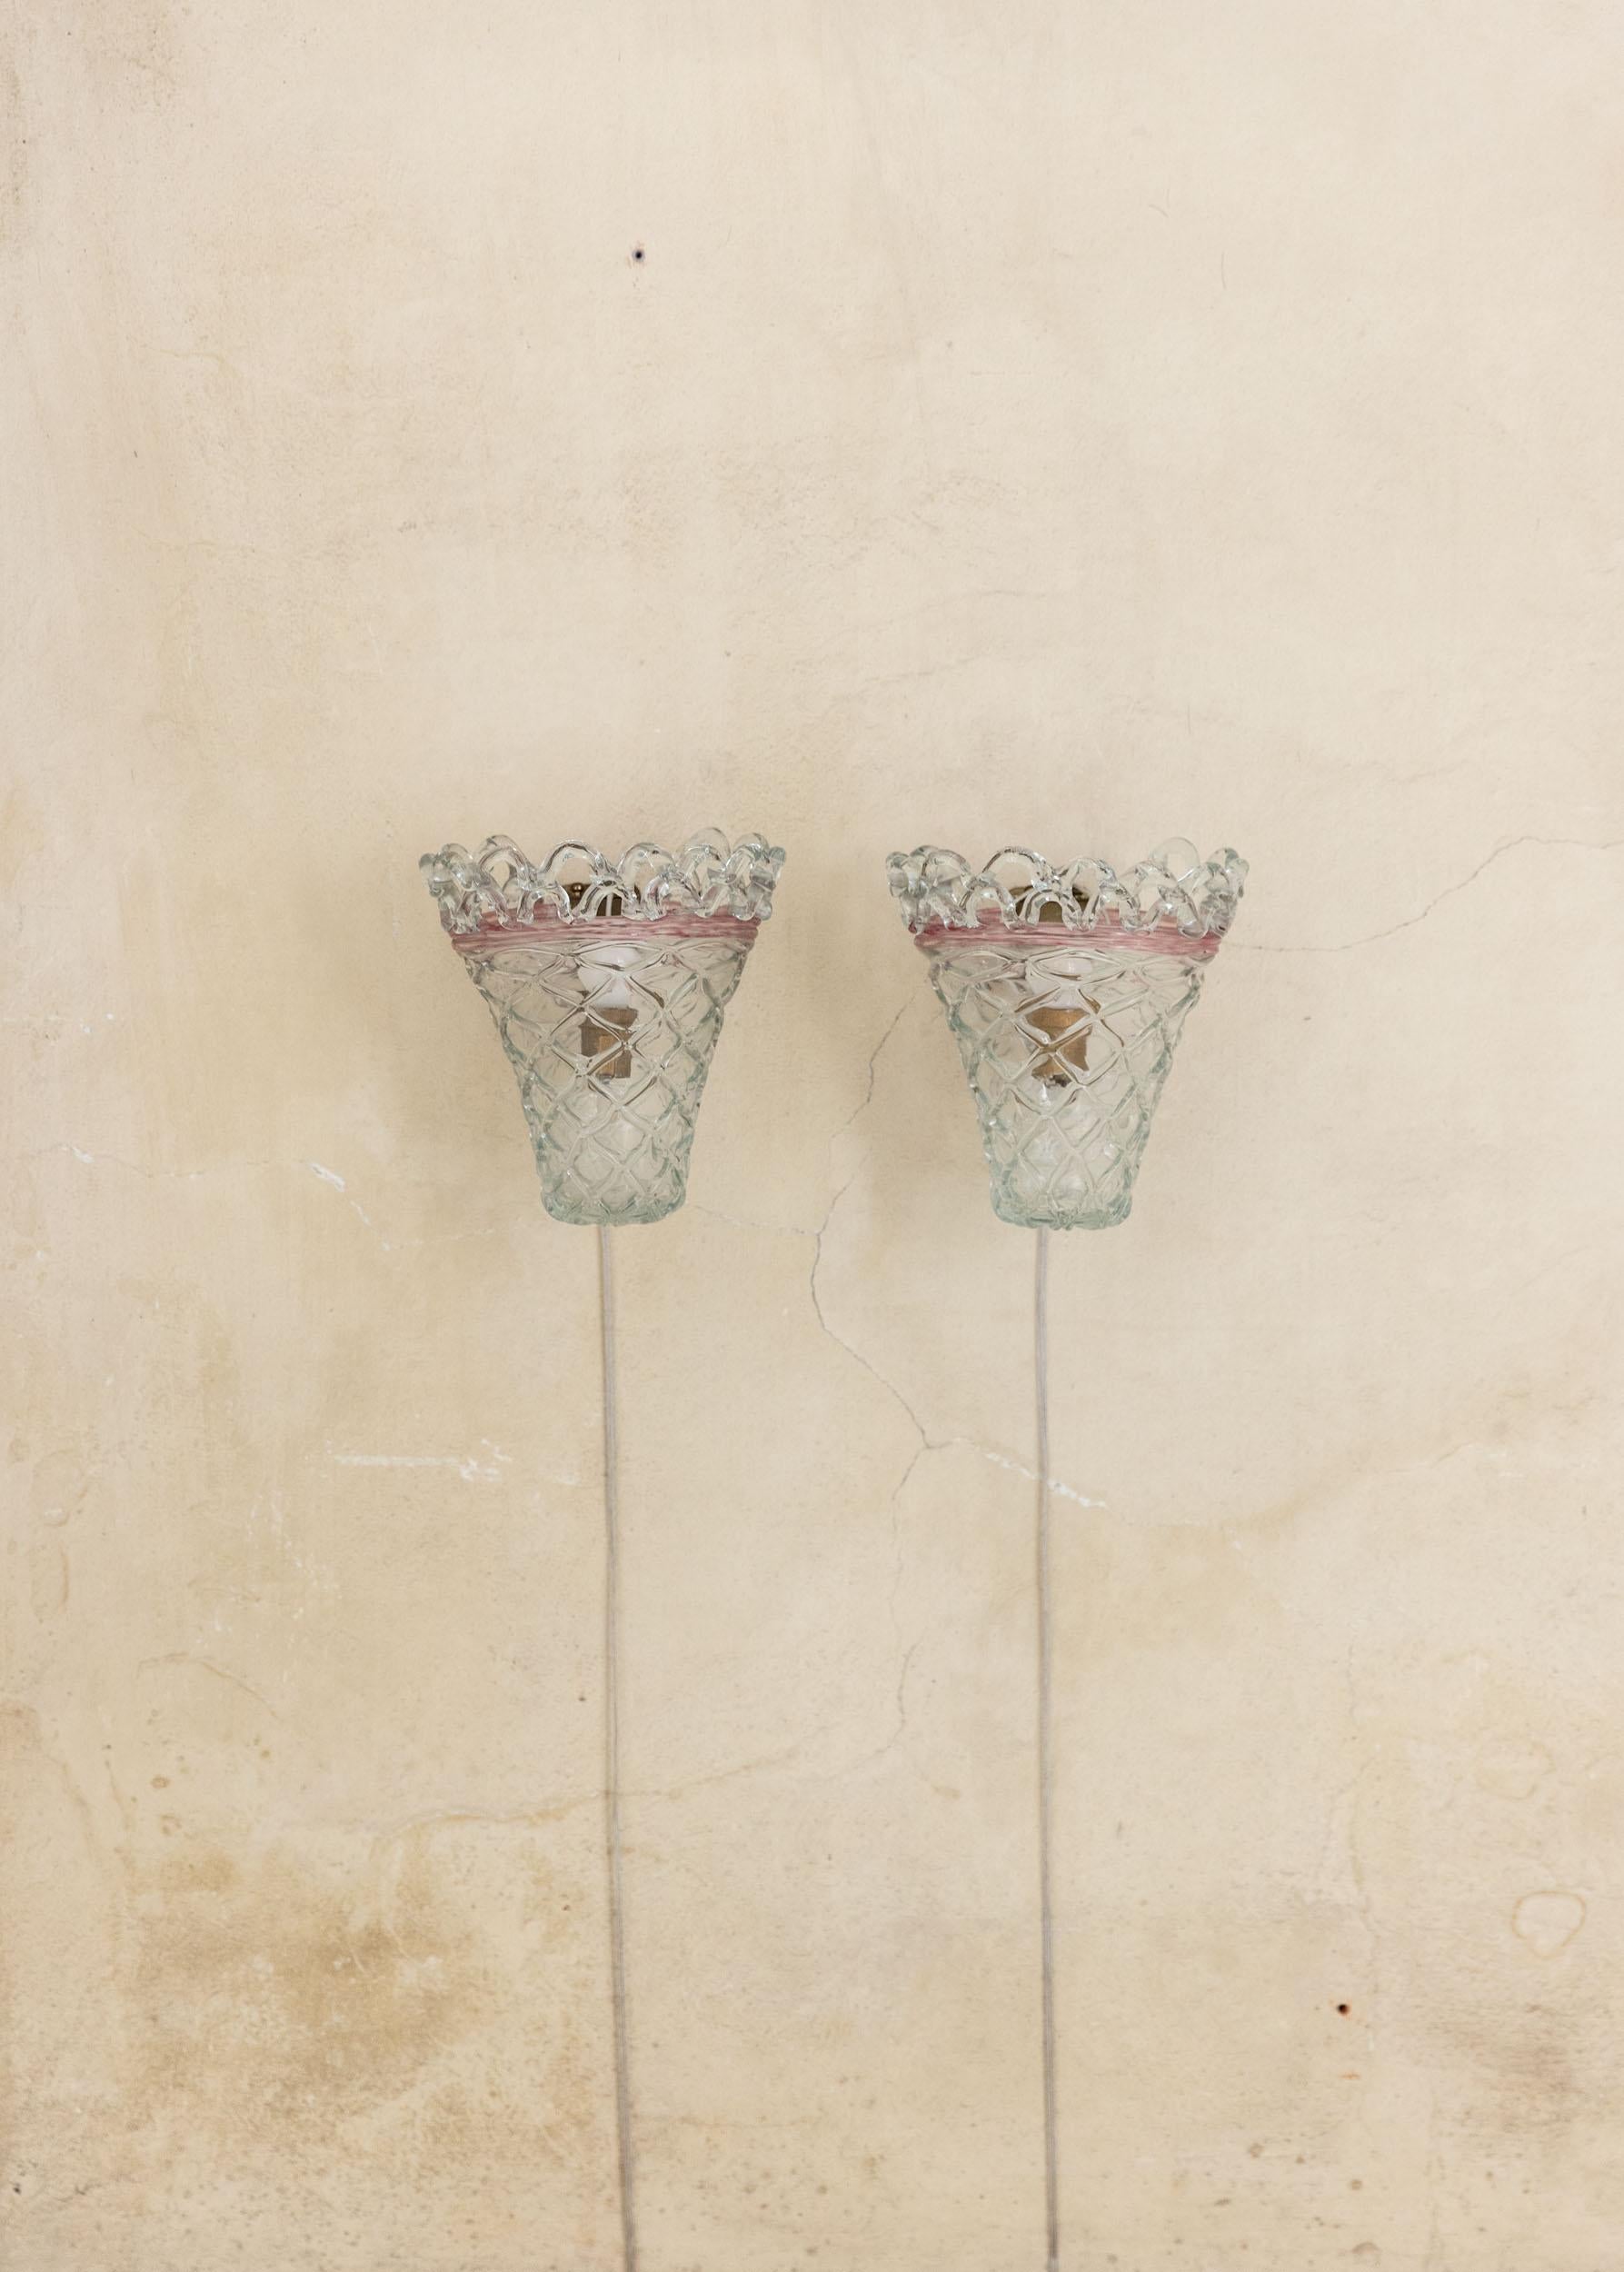 Charmante paire d'appliques murales Venini en verre clair décoré, détails roses particuliers et artisanat.
Paire très rare.
Marqué Venini dans le laiton.
Italie, années 1950